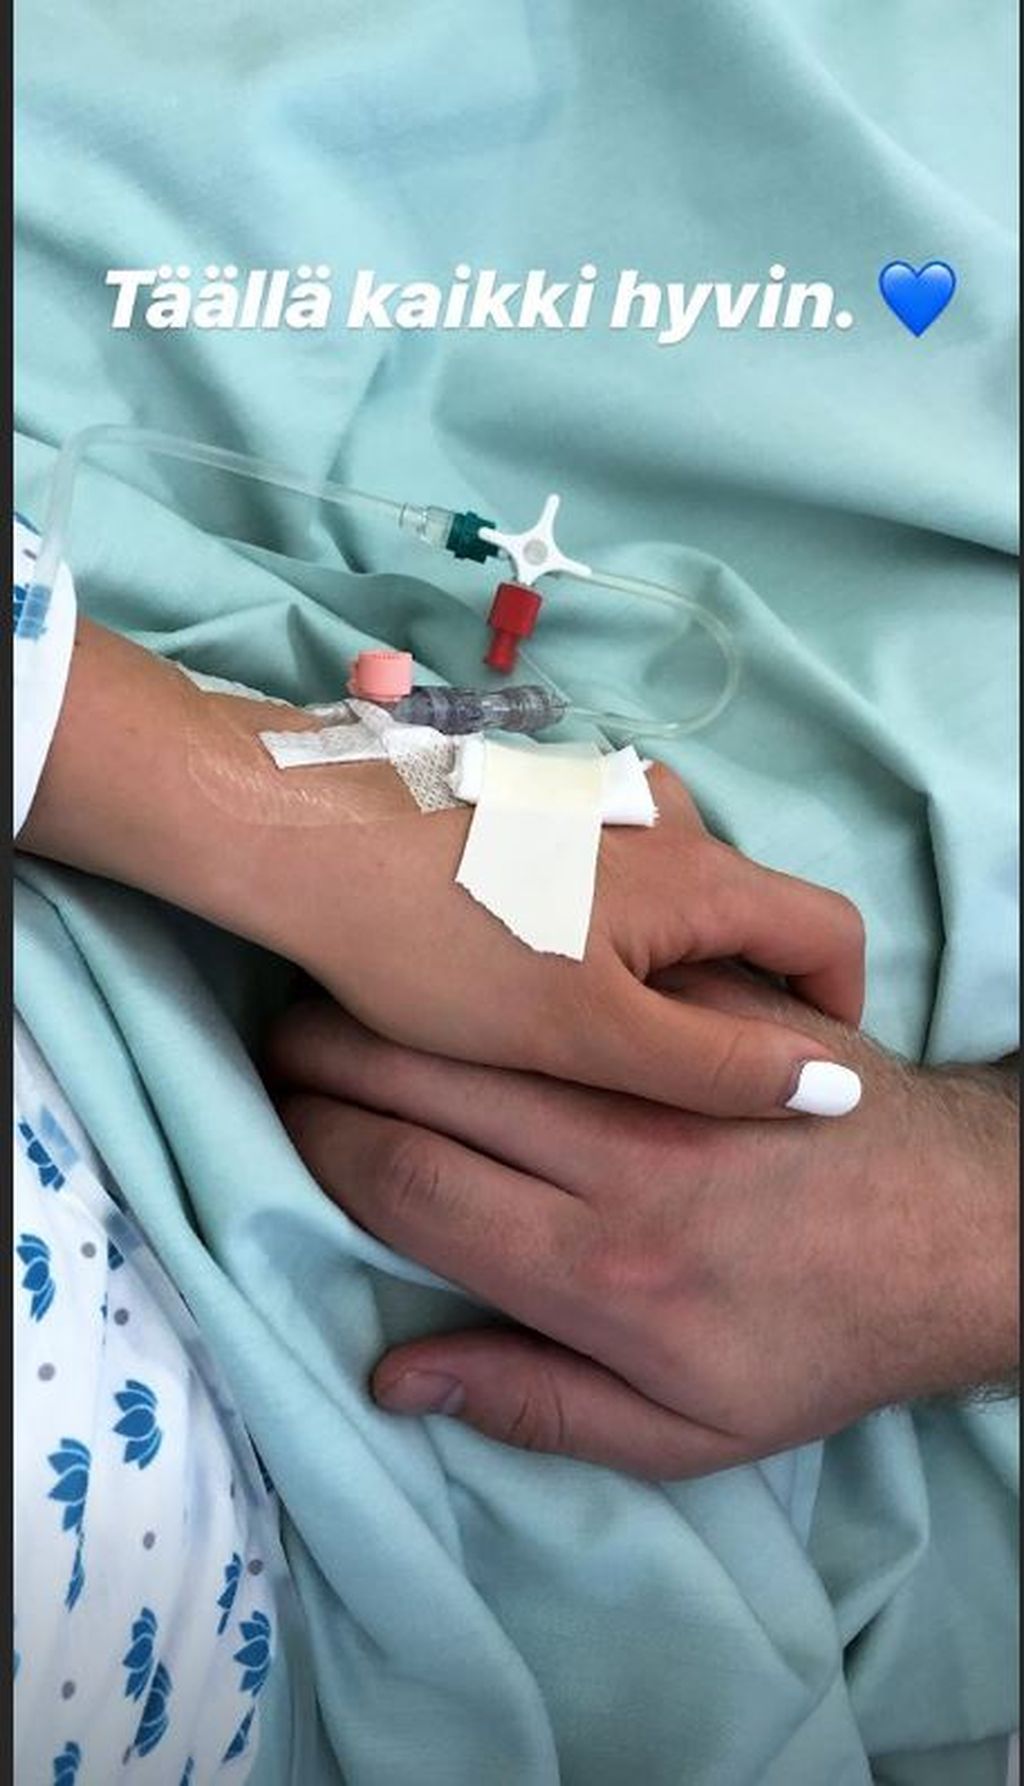 Syöpäleikkauksessa ollut Janni Hussi julkaisi kuvan sairaalasta – Joel rakkaansa tukena: ”Täällä kaikki hyvin”